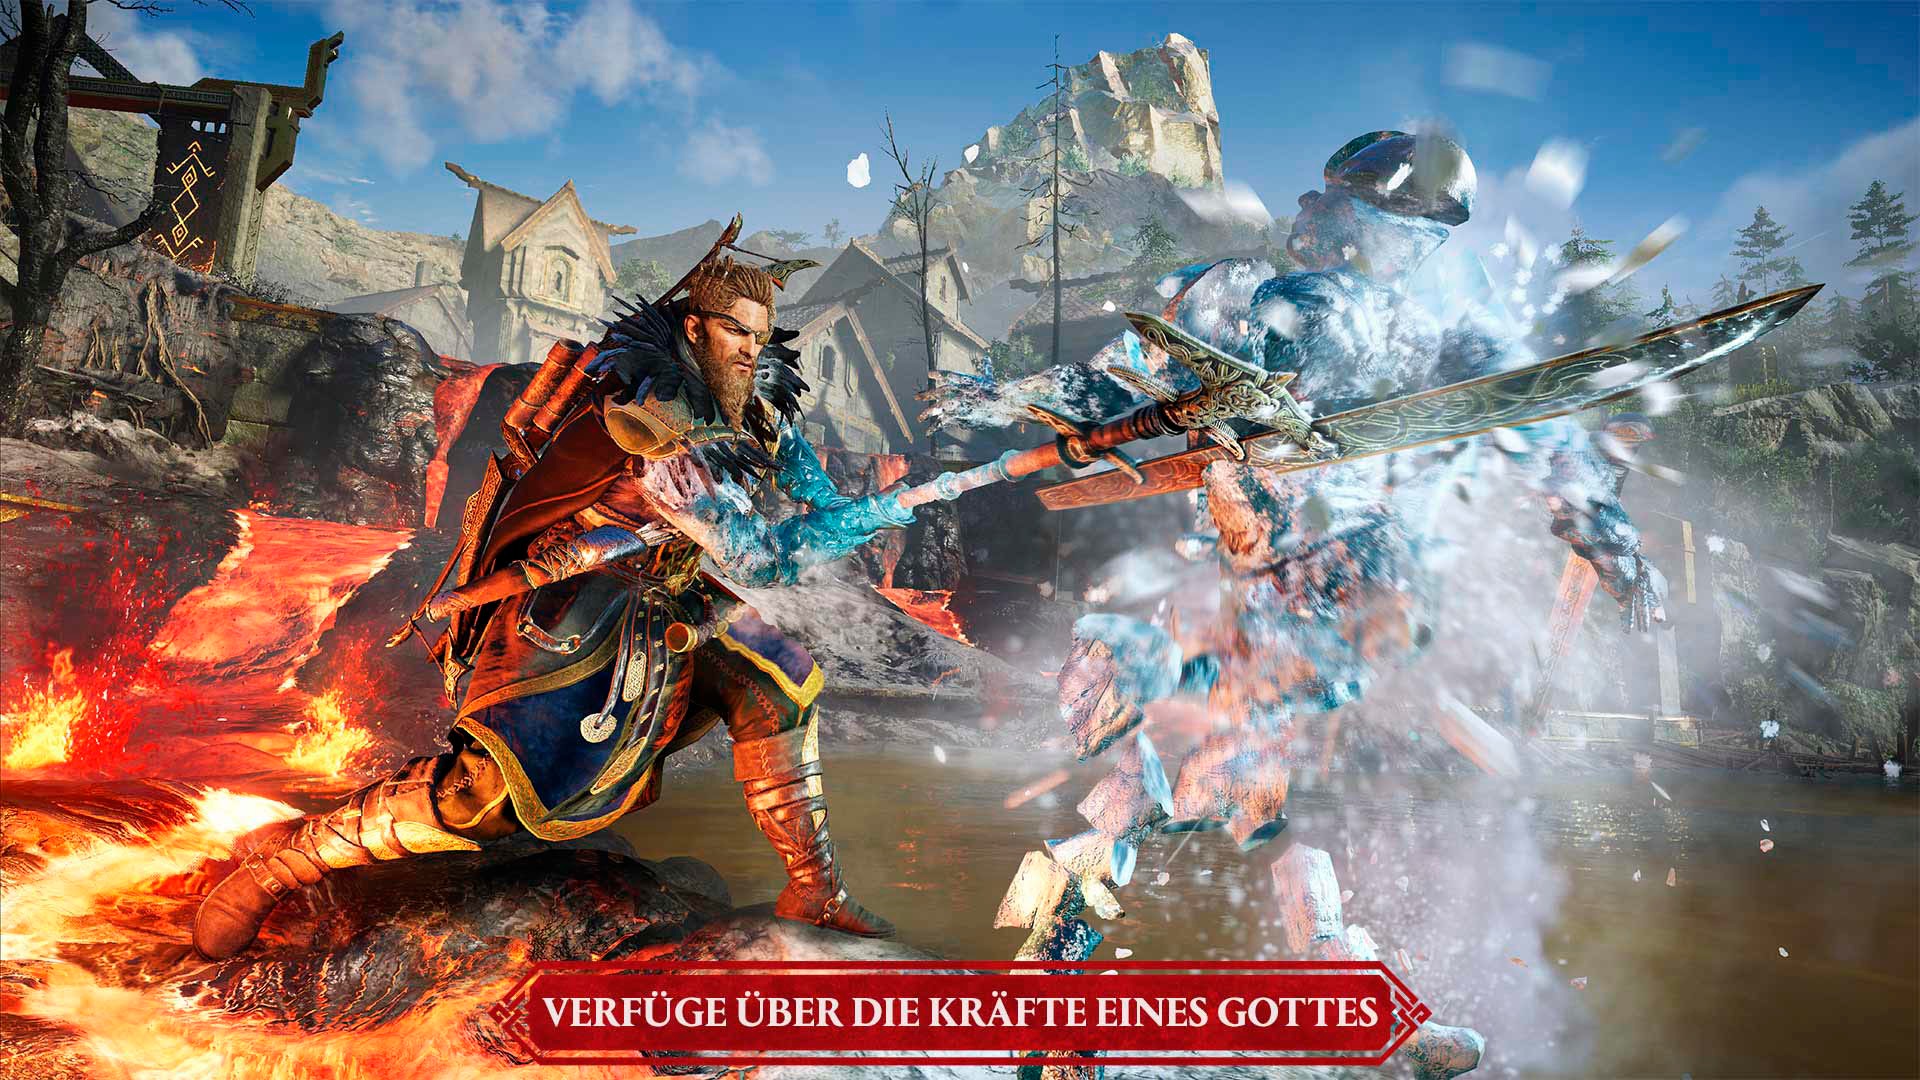 UBISOFT Spielesoftware »Assassin's Creed Valhalla: Die Zeichen Ragnaröks«, PlayStation 4